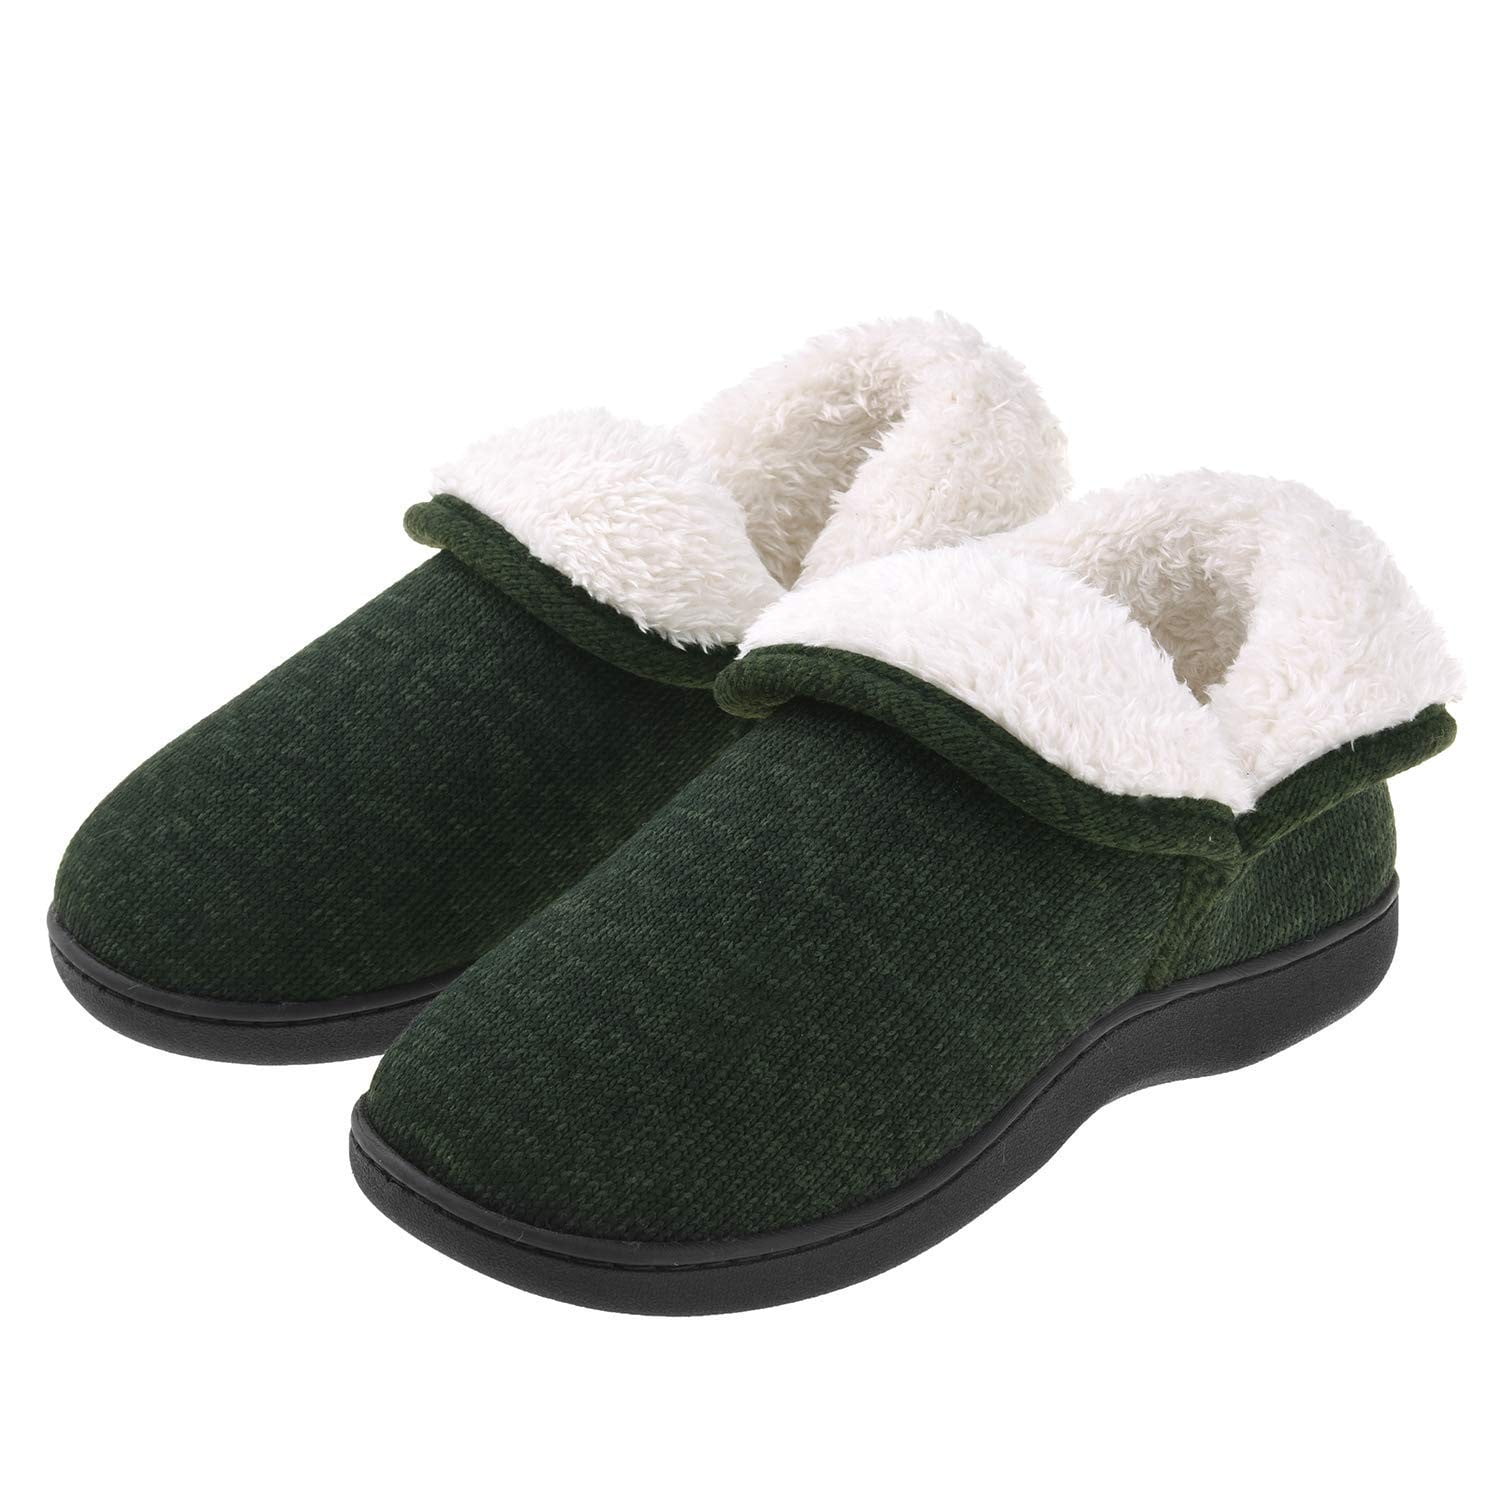 green bedroom slippers